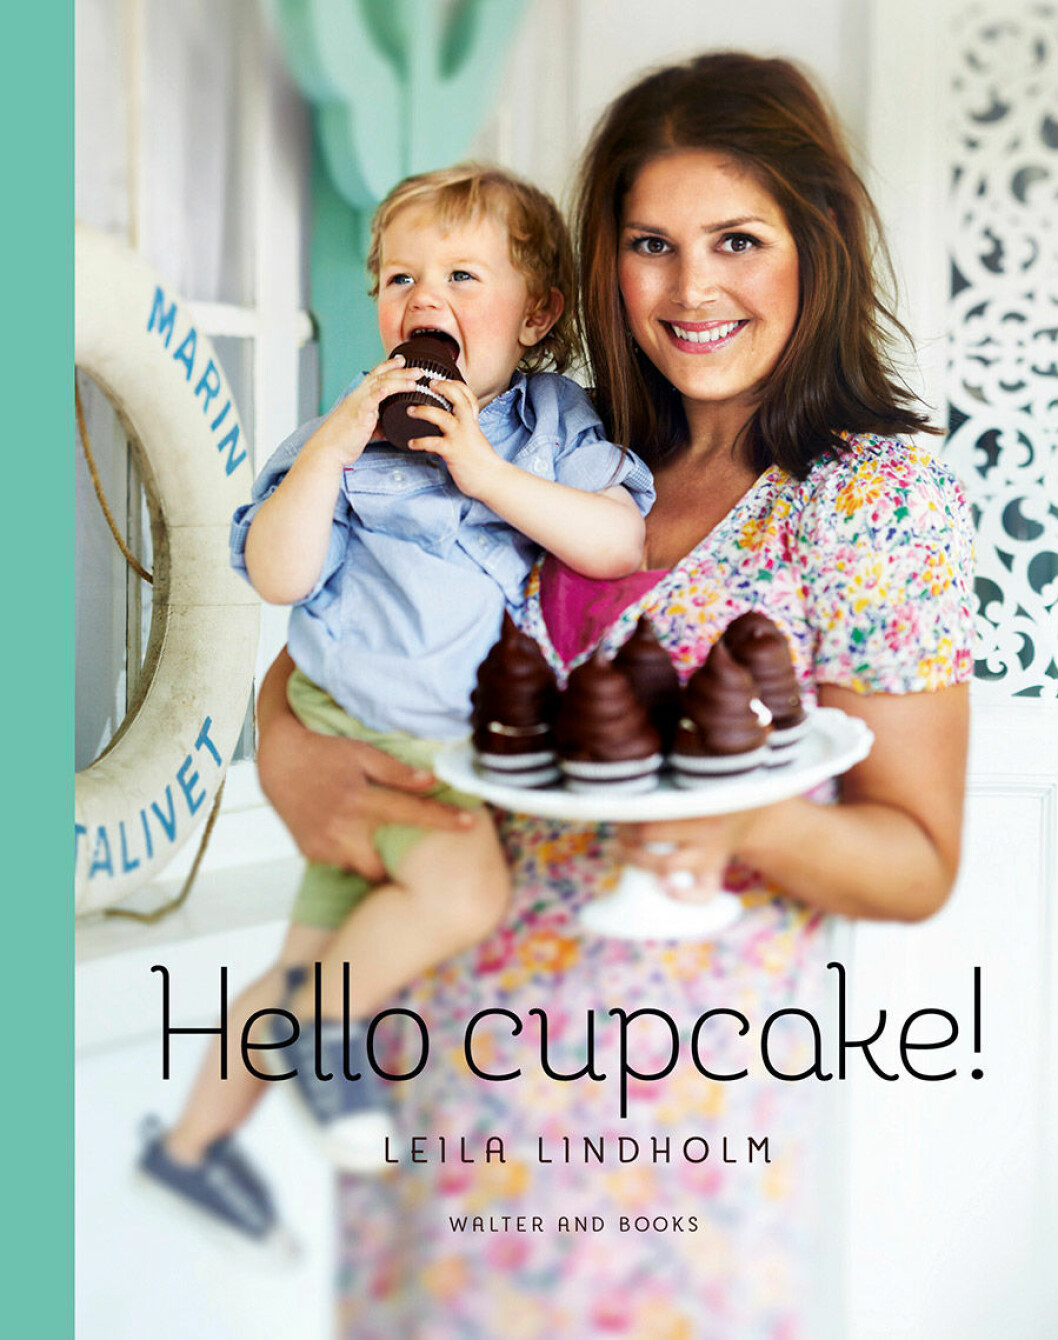 Hello cupcake av Leila Lindholm. Foto: Wolfgang Kleinschmidt